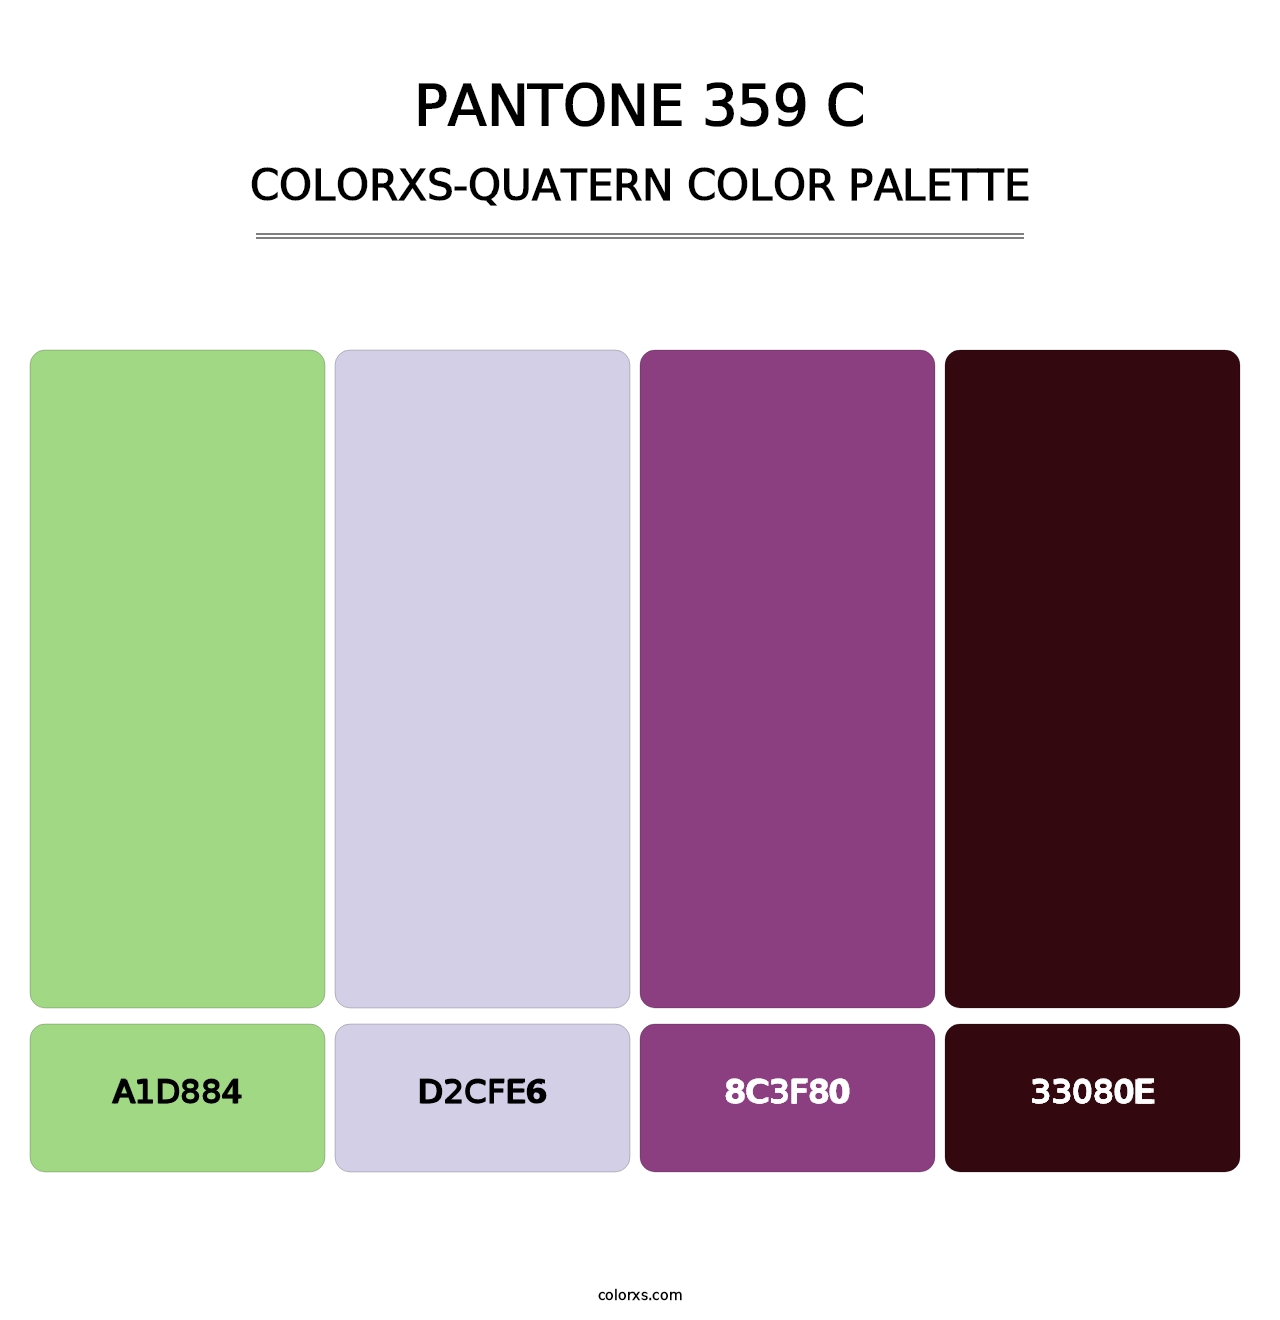 PANTONE 359 C - Colorxs Quatern Palette